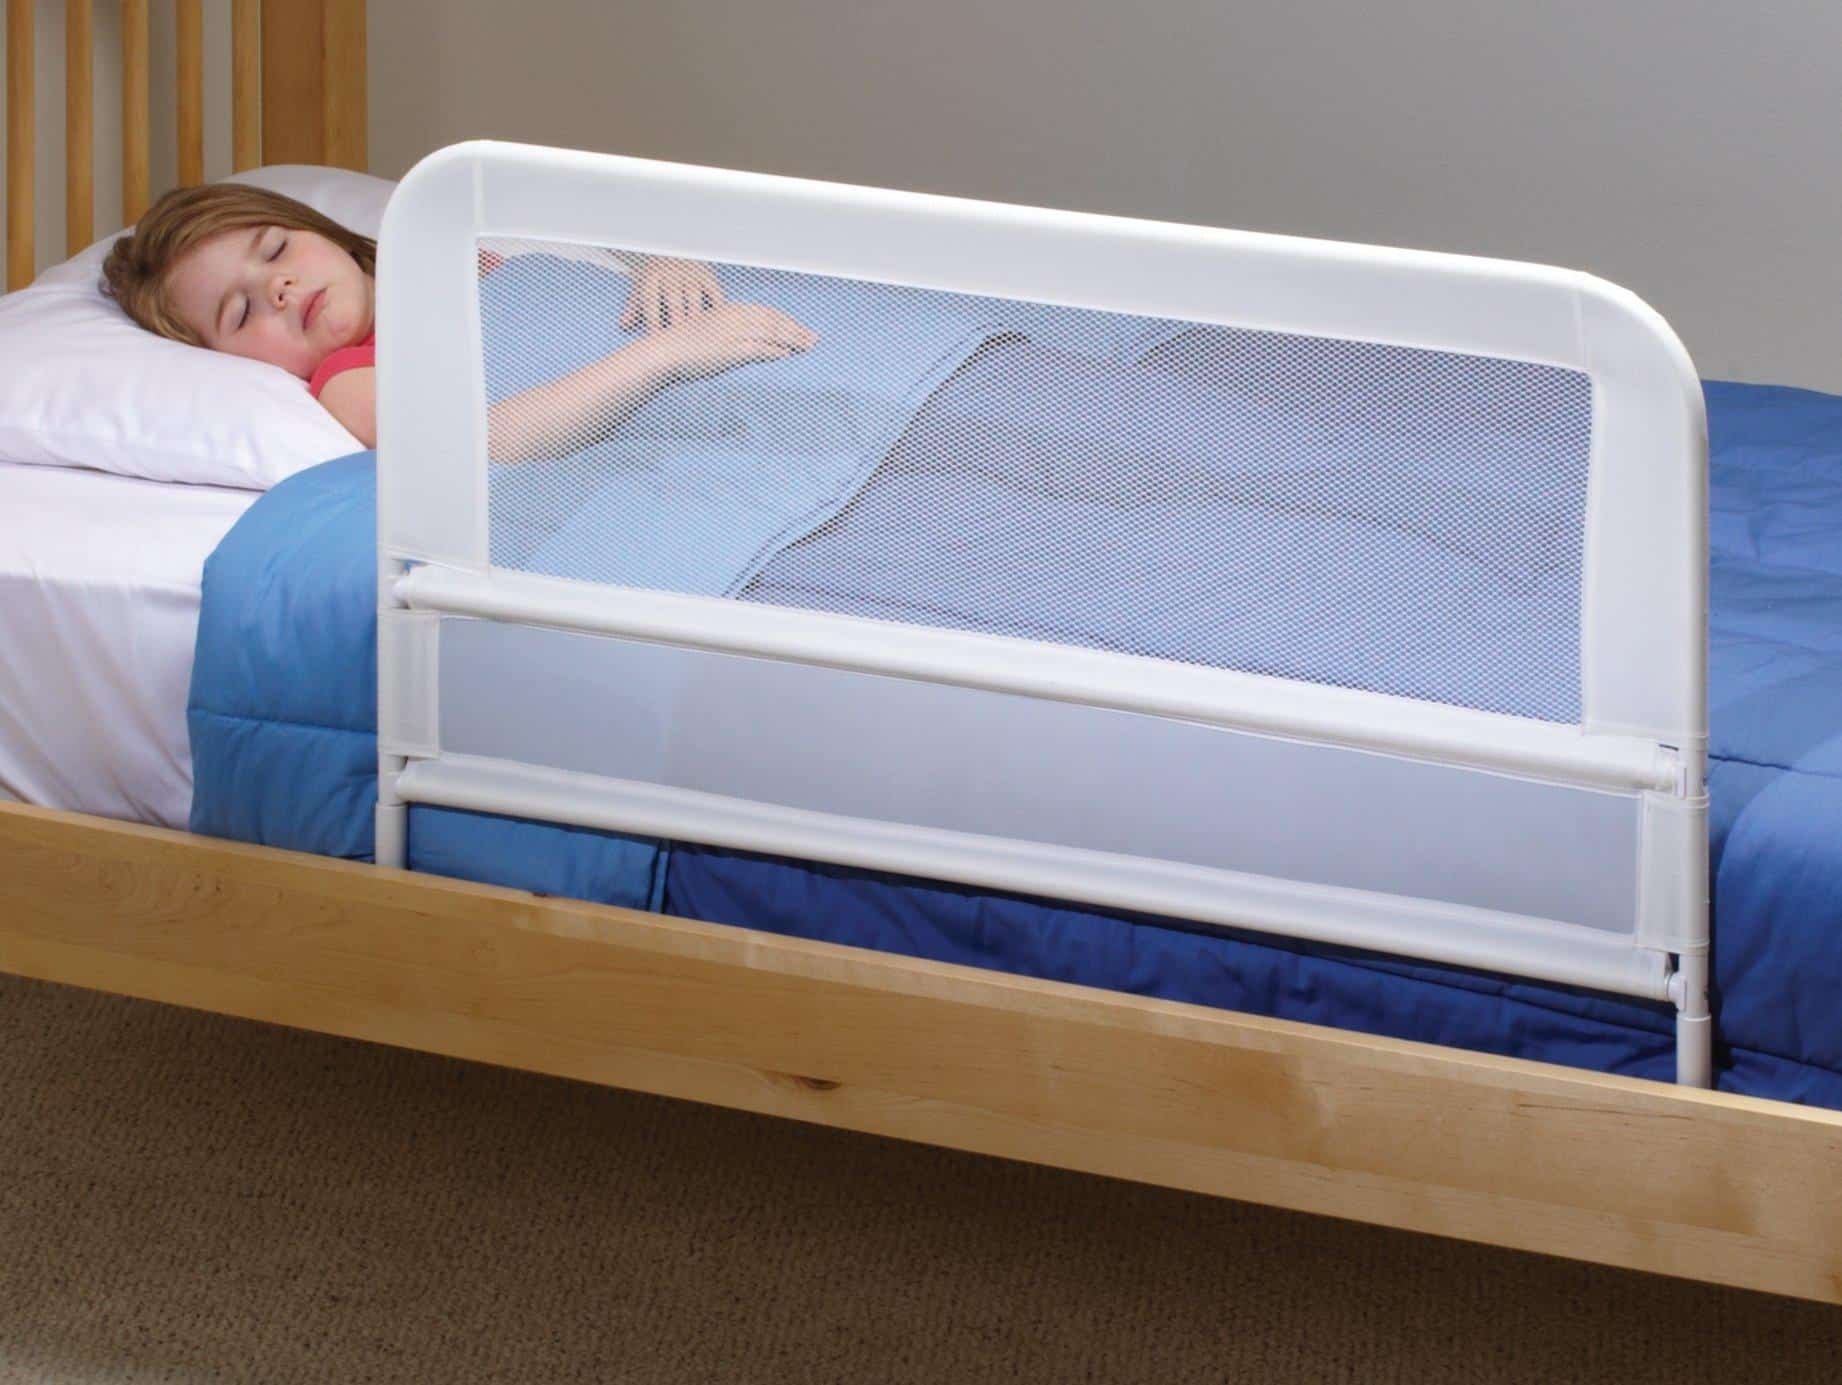 children safety bed rails